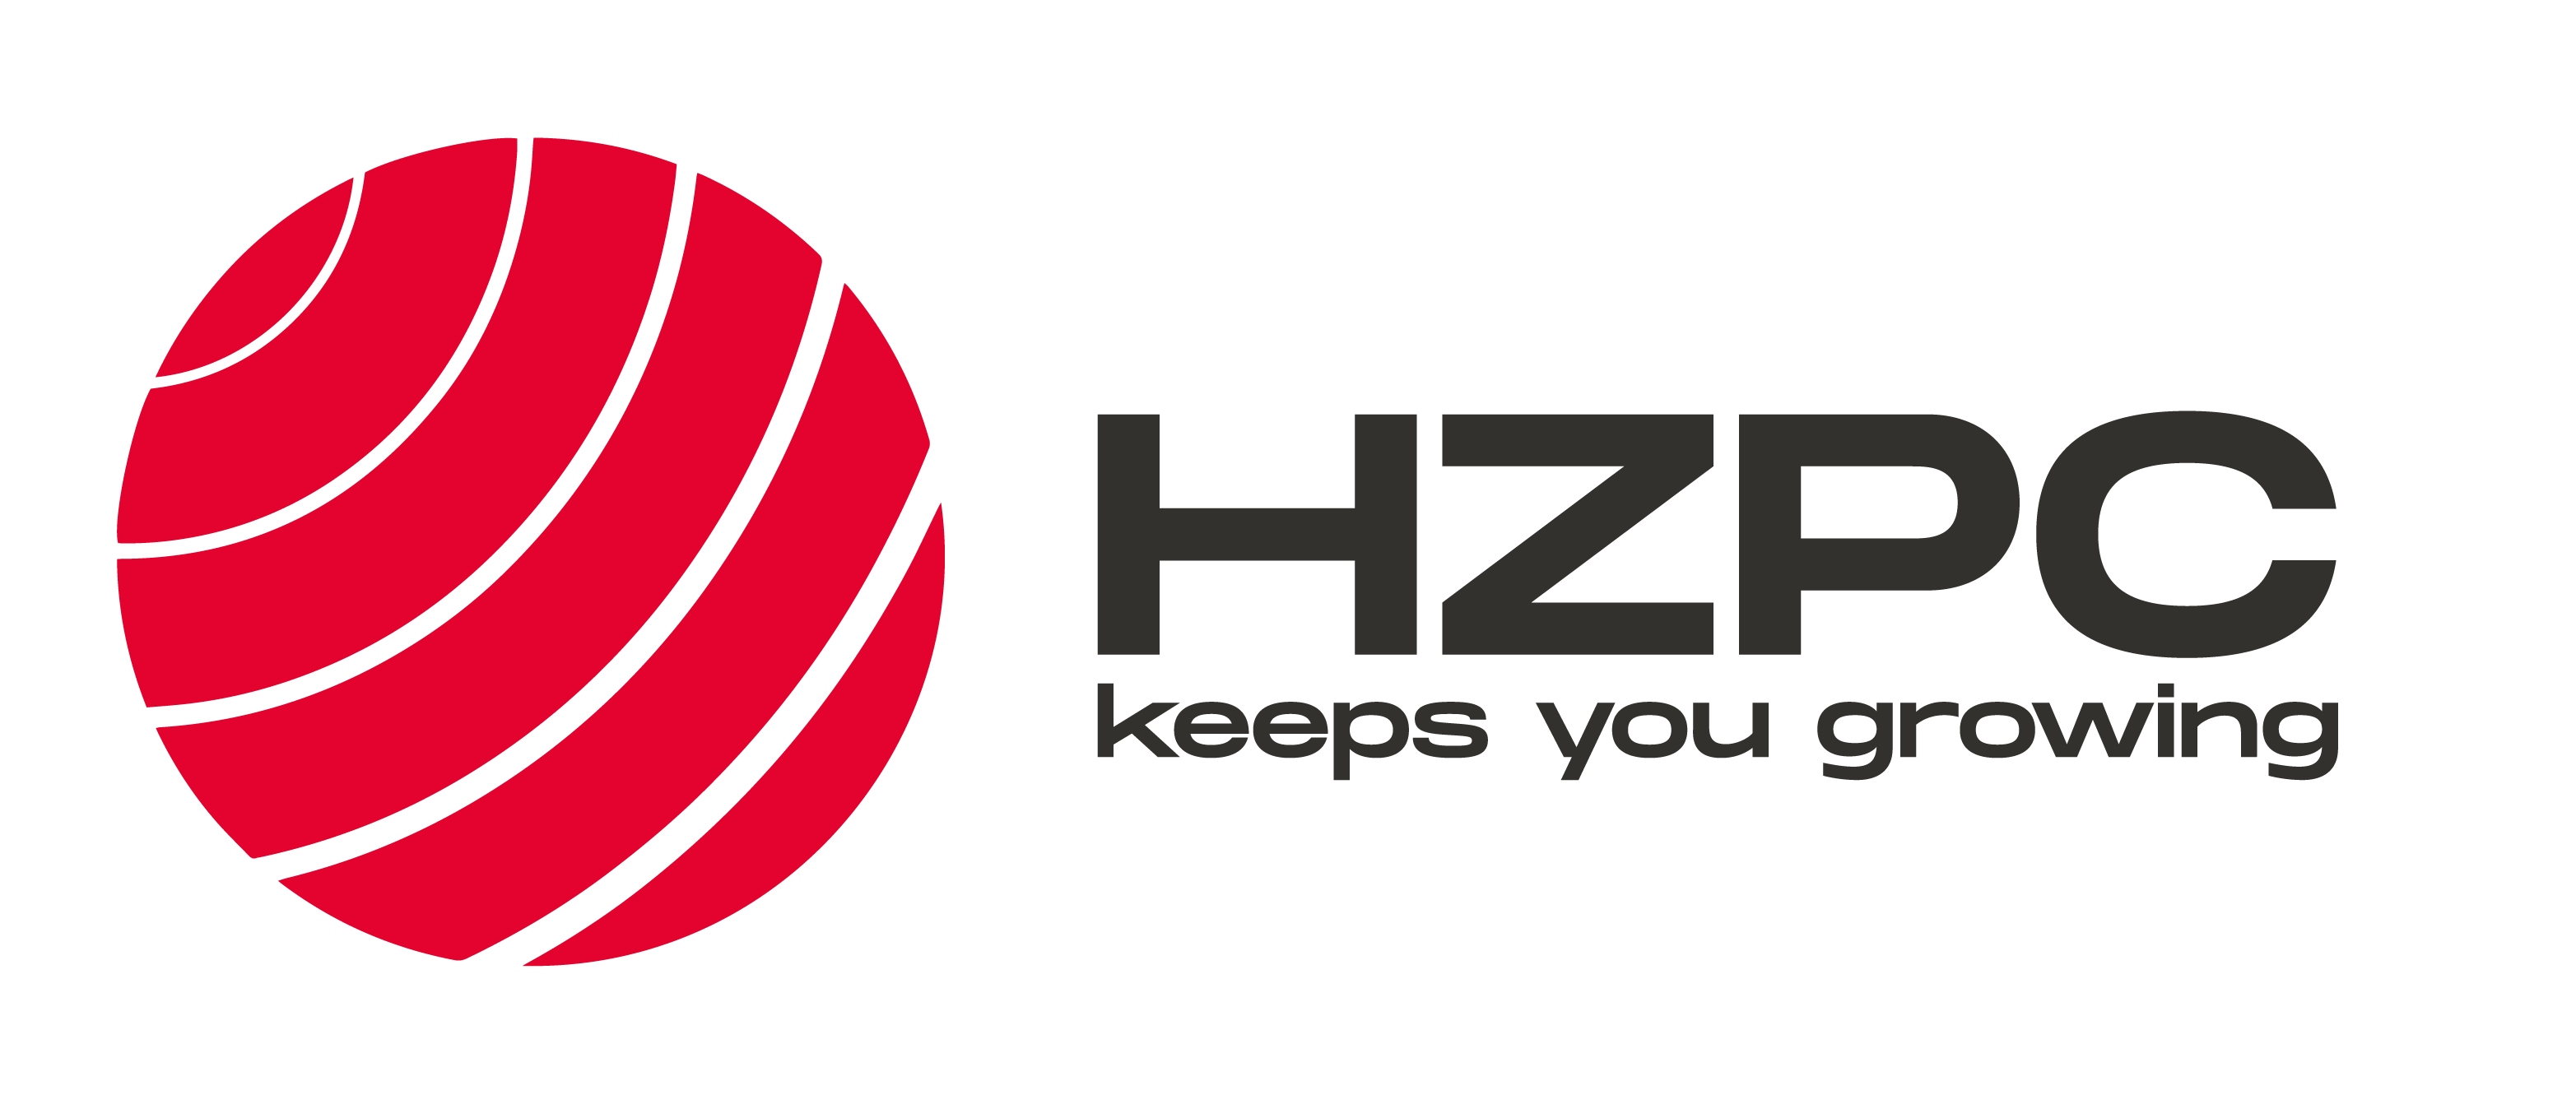 Logo HZPC